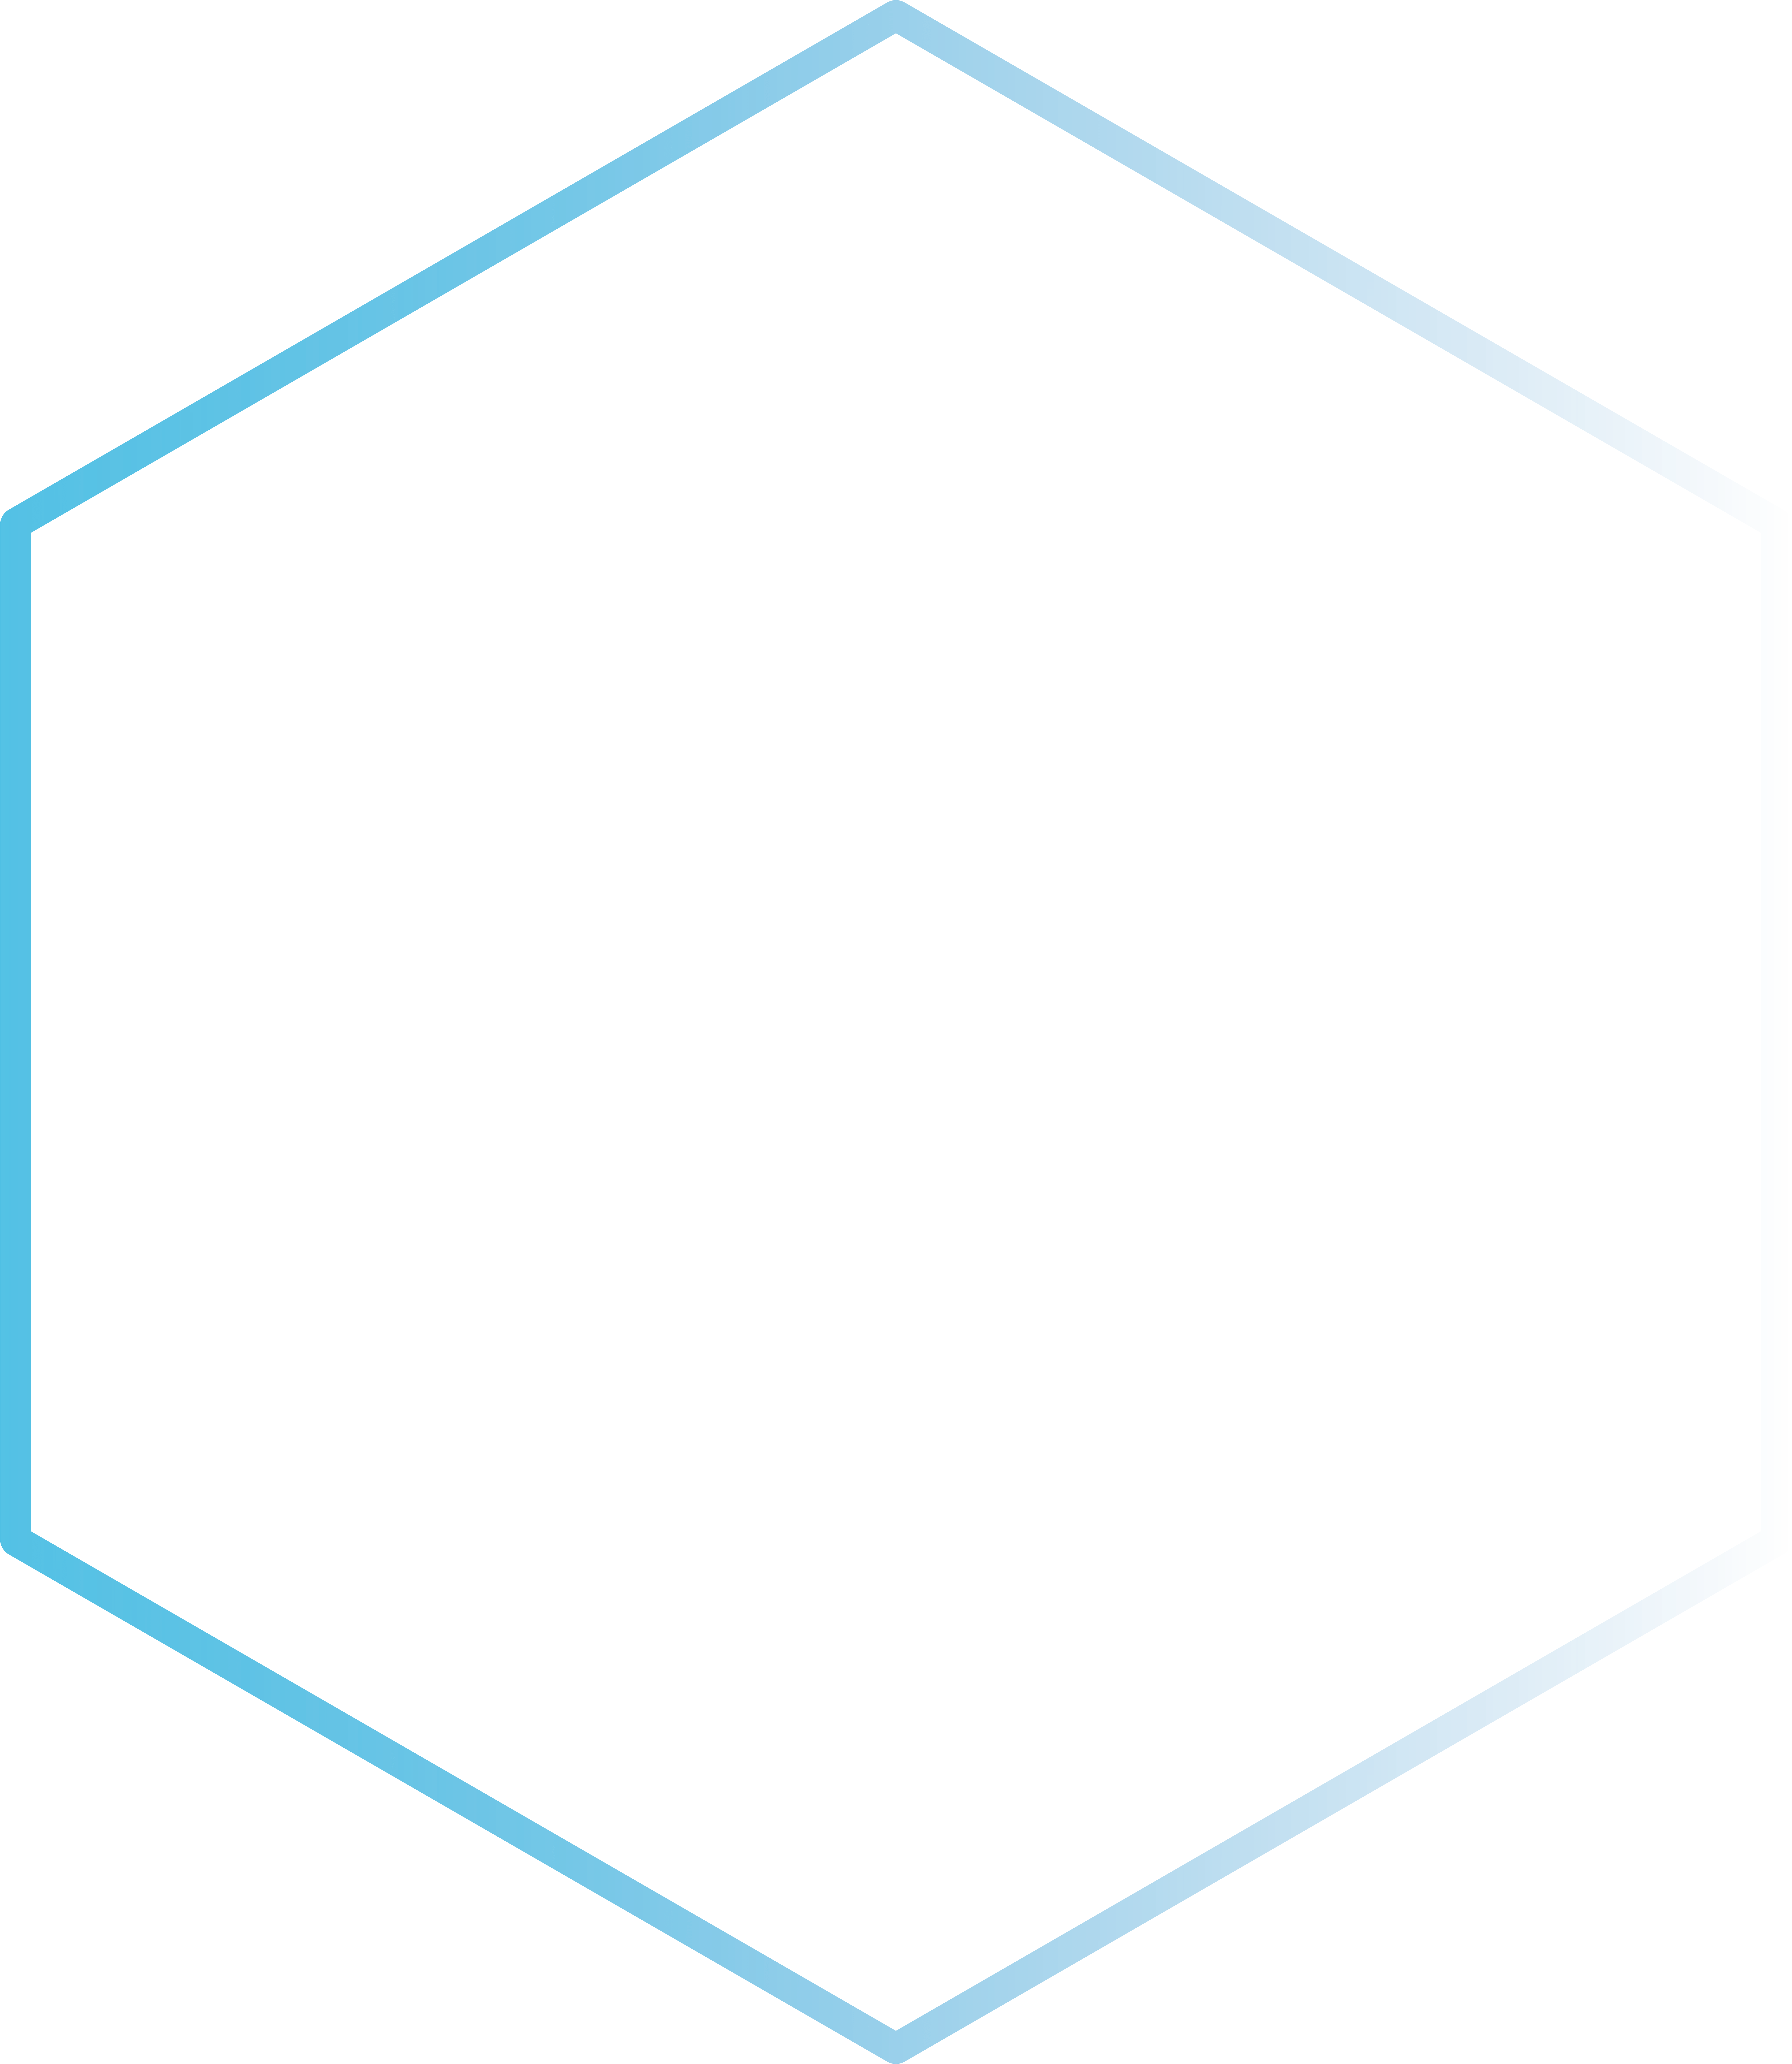 Hexagonal azul degradado